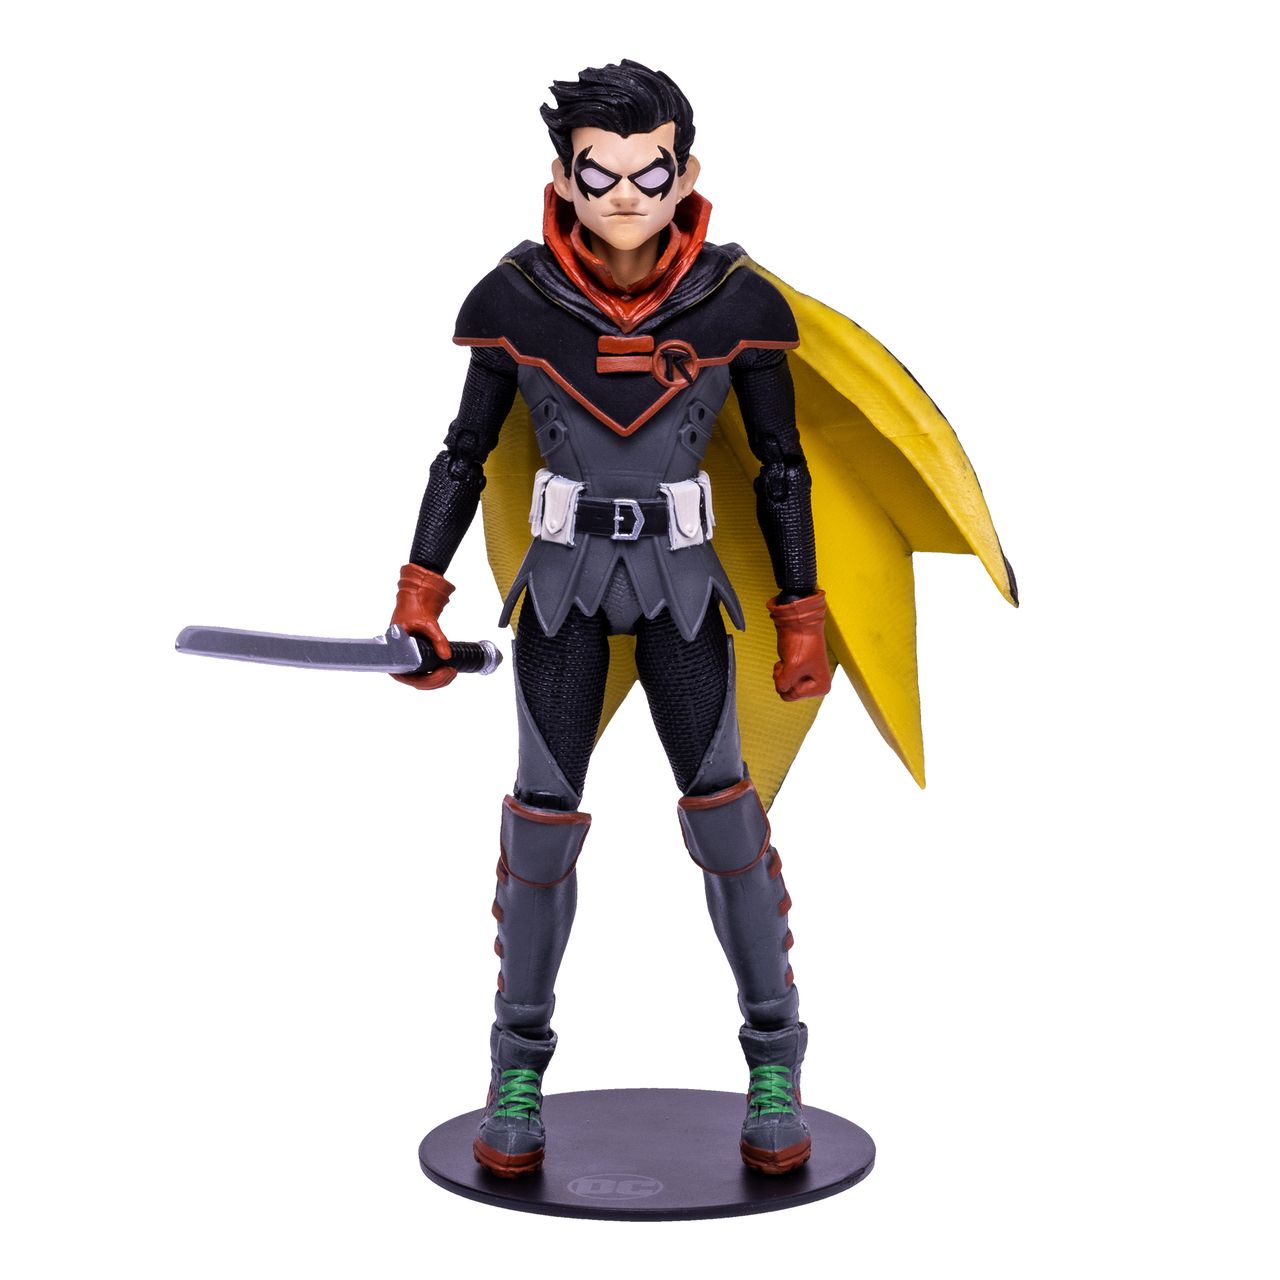 An action figure captures Damian Wayne's Robin look from Infinite Frontier.